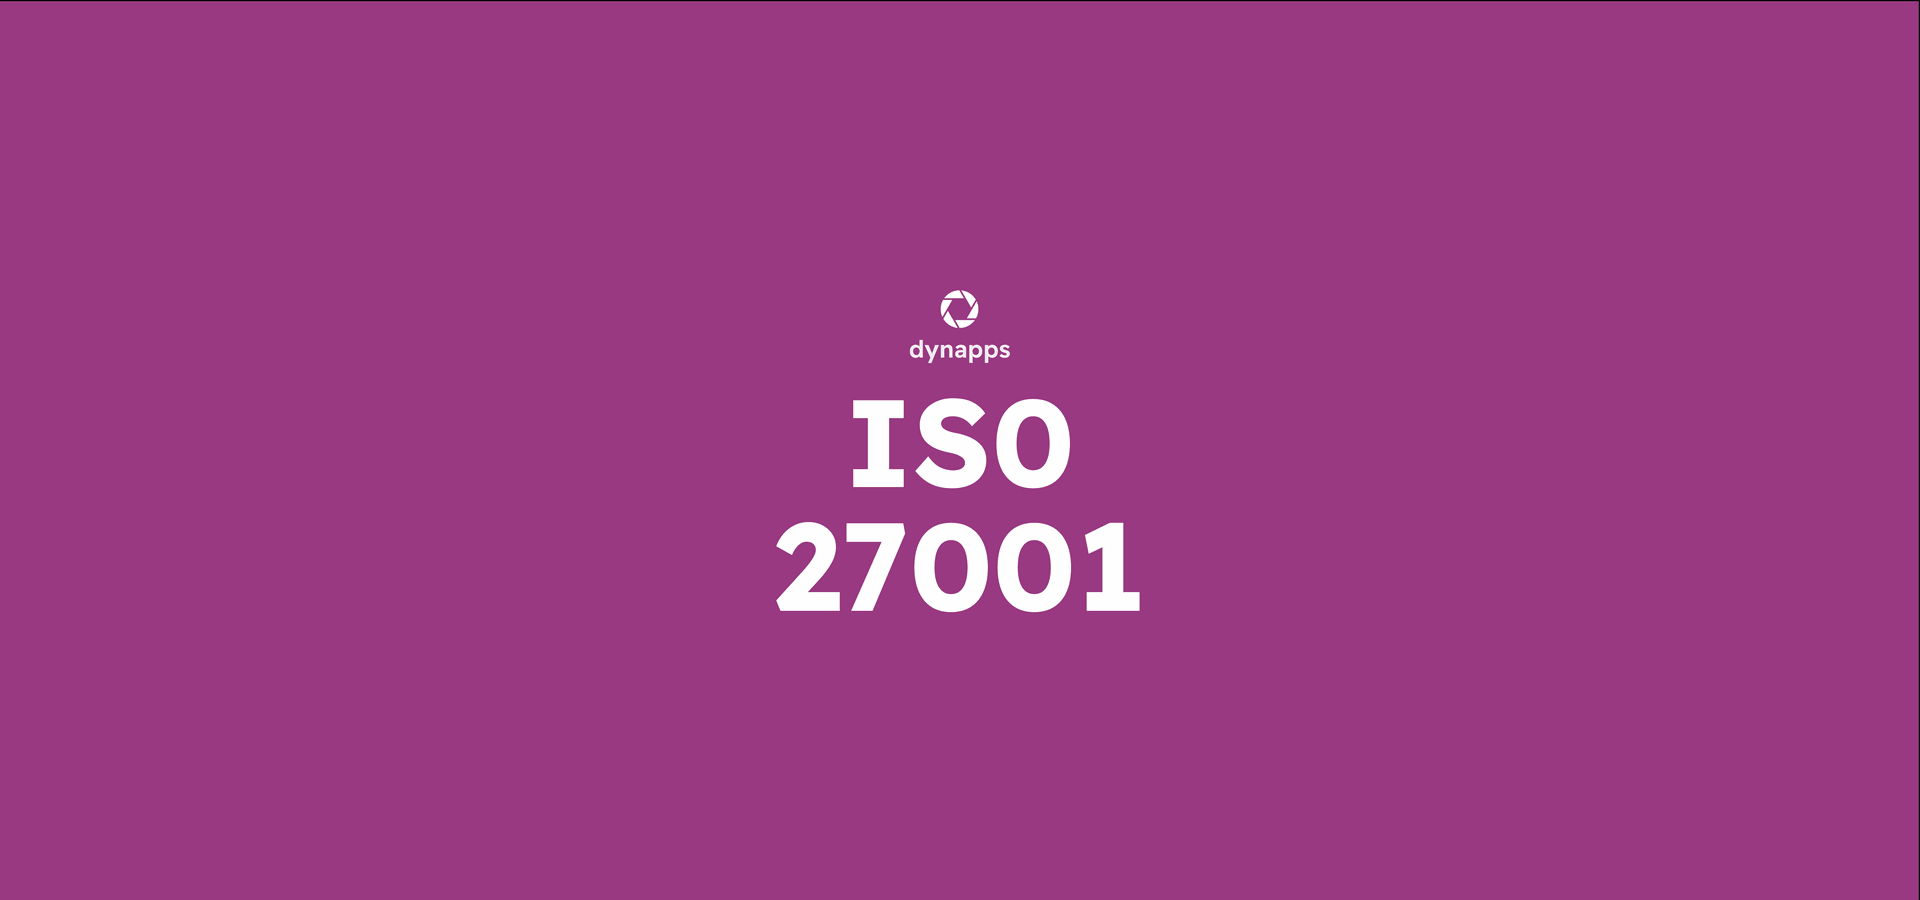 Dynapps behaalt gerenommeerde ISO 27001-certificaat